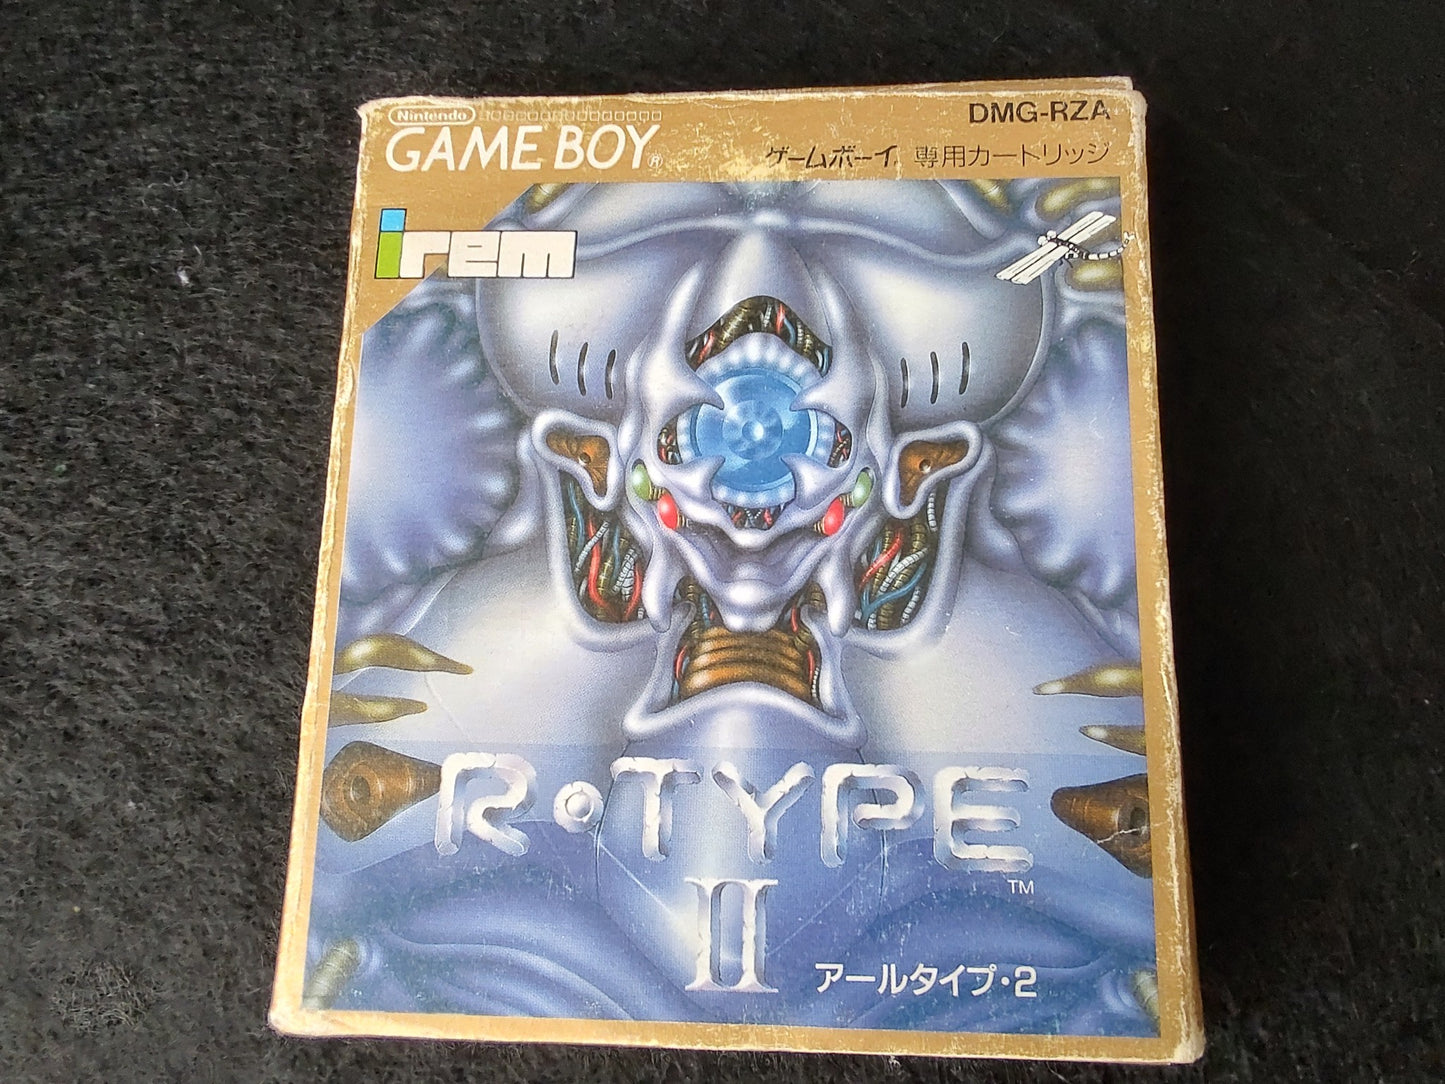 R-TYPE 2 Part2 Gameboy GB Cartridge, Manual, Box set, Working-f1015-